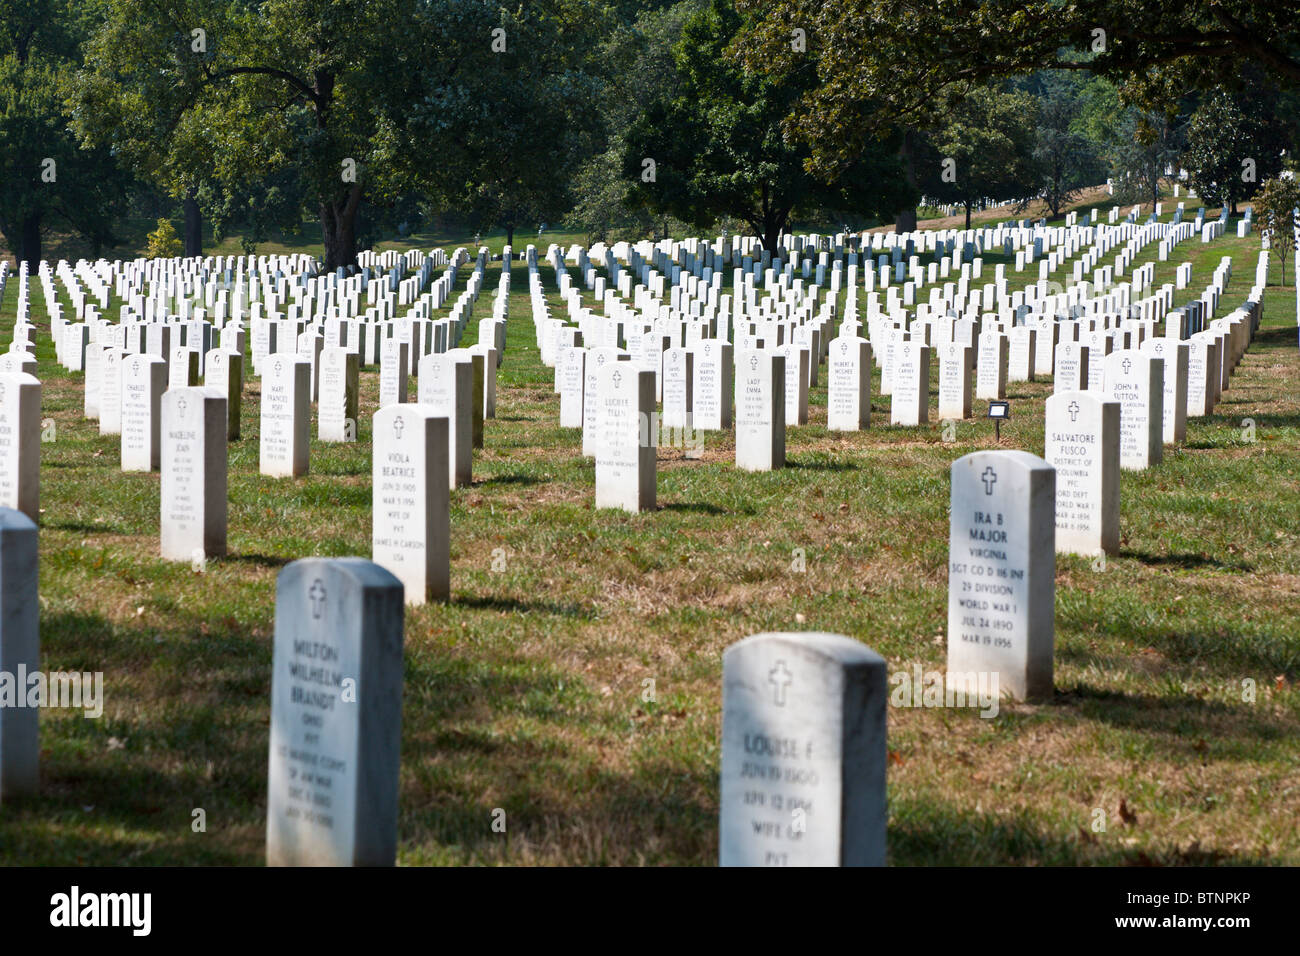 Arlington, VA - Sep 2009 - rangées de pierres tombales dans le Cimetière National d'Arlington à Arlington, Virginie Banque D'Images